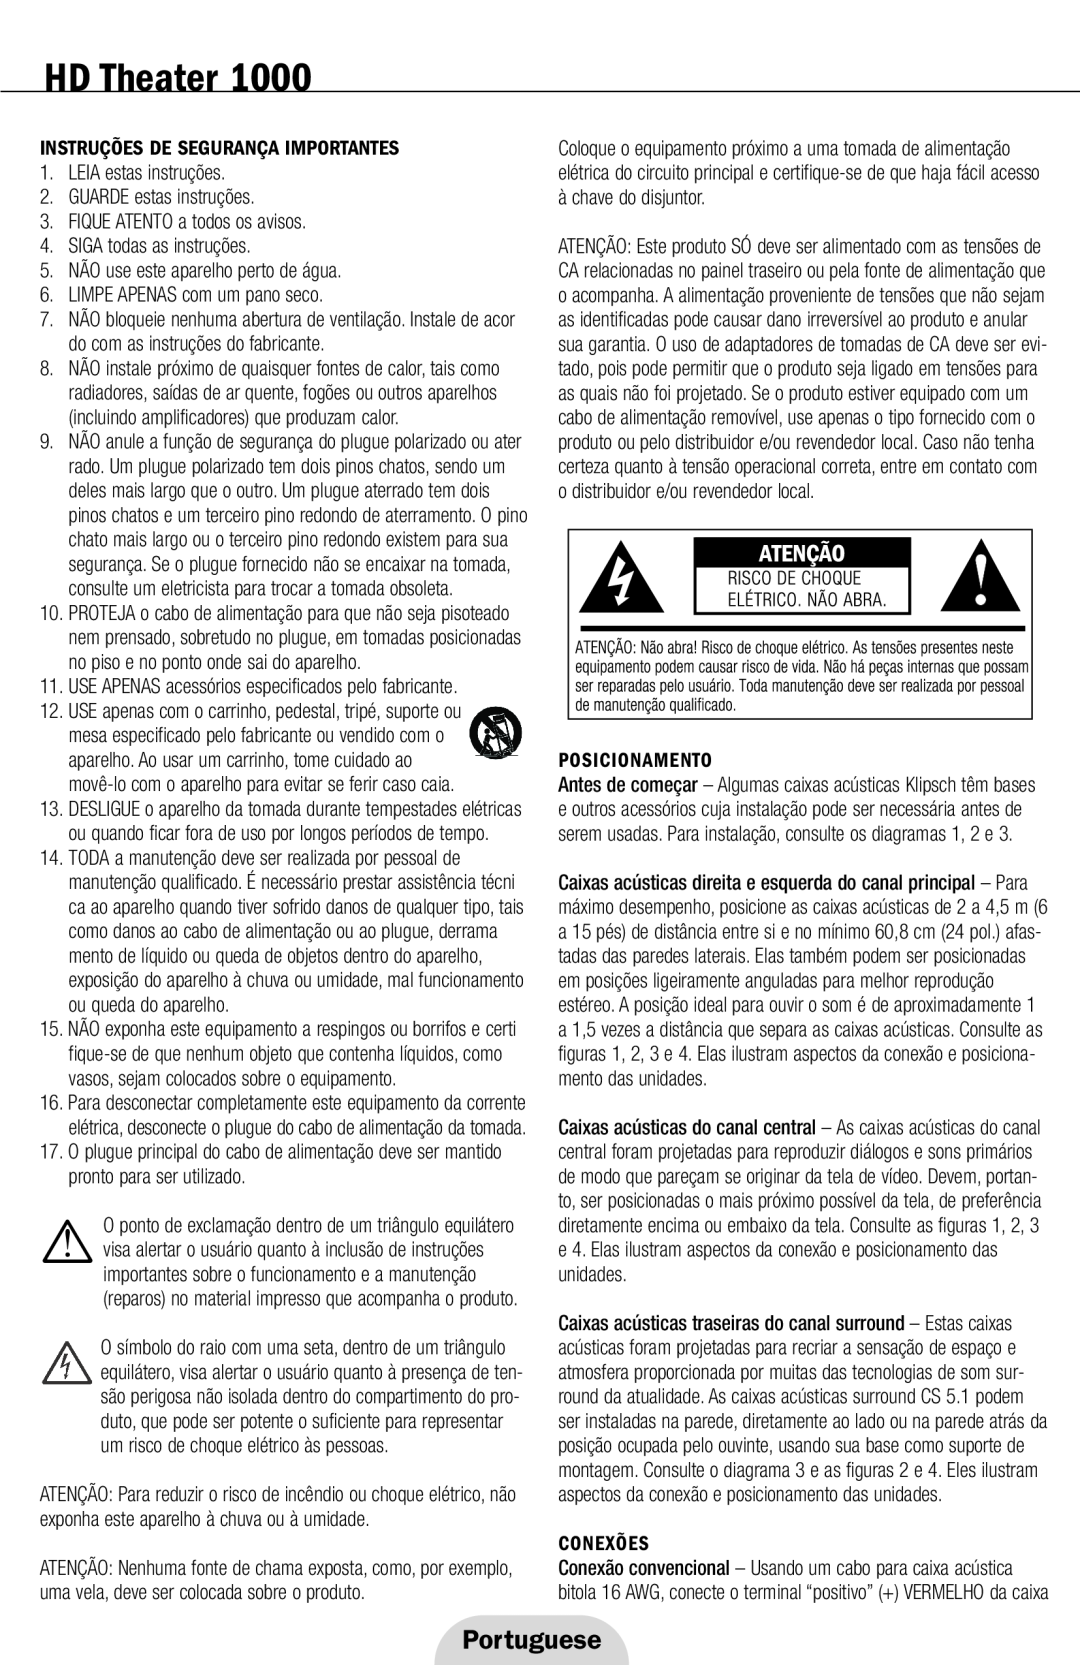 Klipsch 1000 Portuguese, Instruções De Segurança Importantes, LEIA estas instruções 2.GUARDE estas instruções, Conexões 